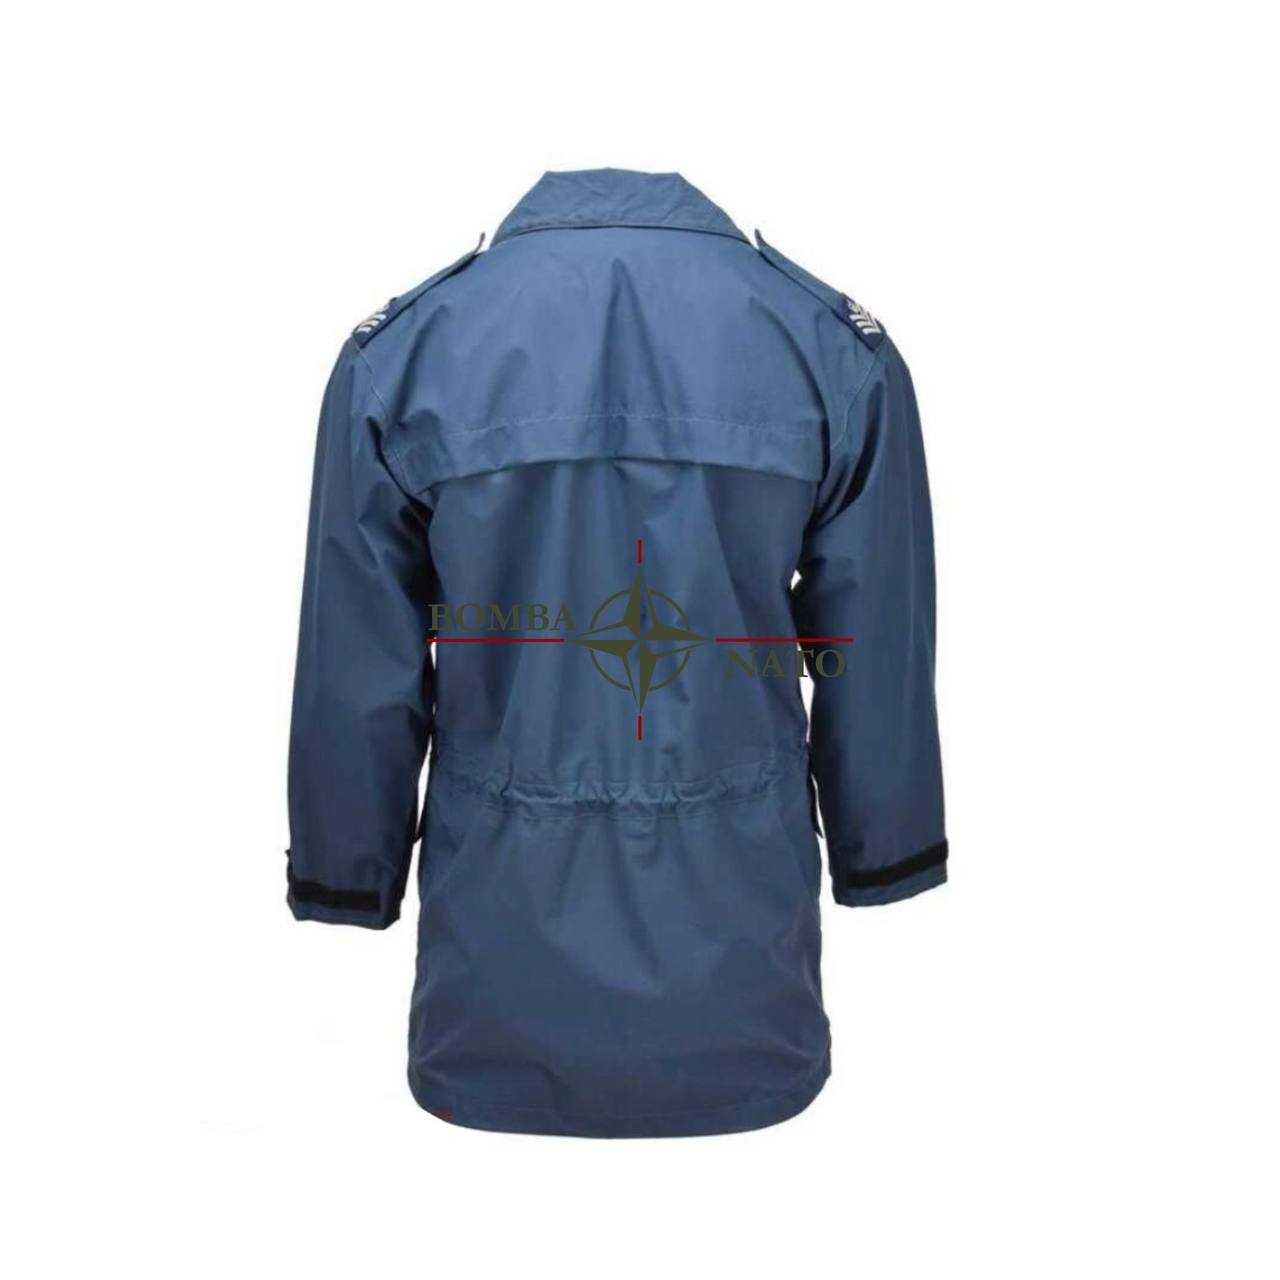 Куртка Royal air force gore-tex wet weather jacket, Англія, оригінал